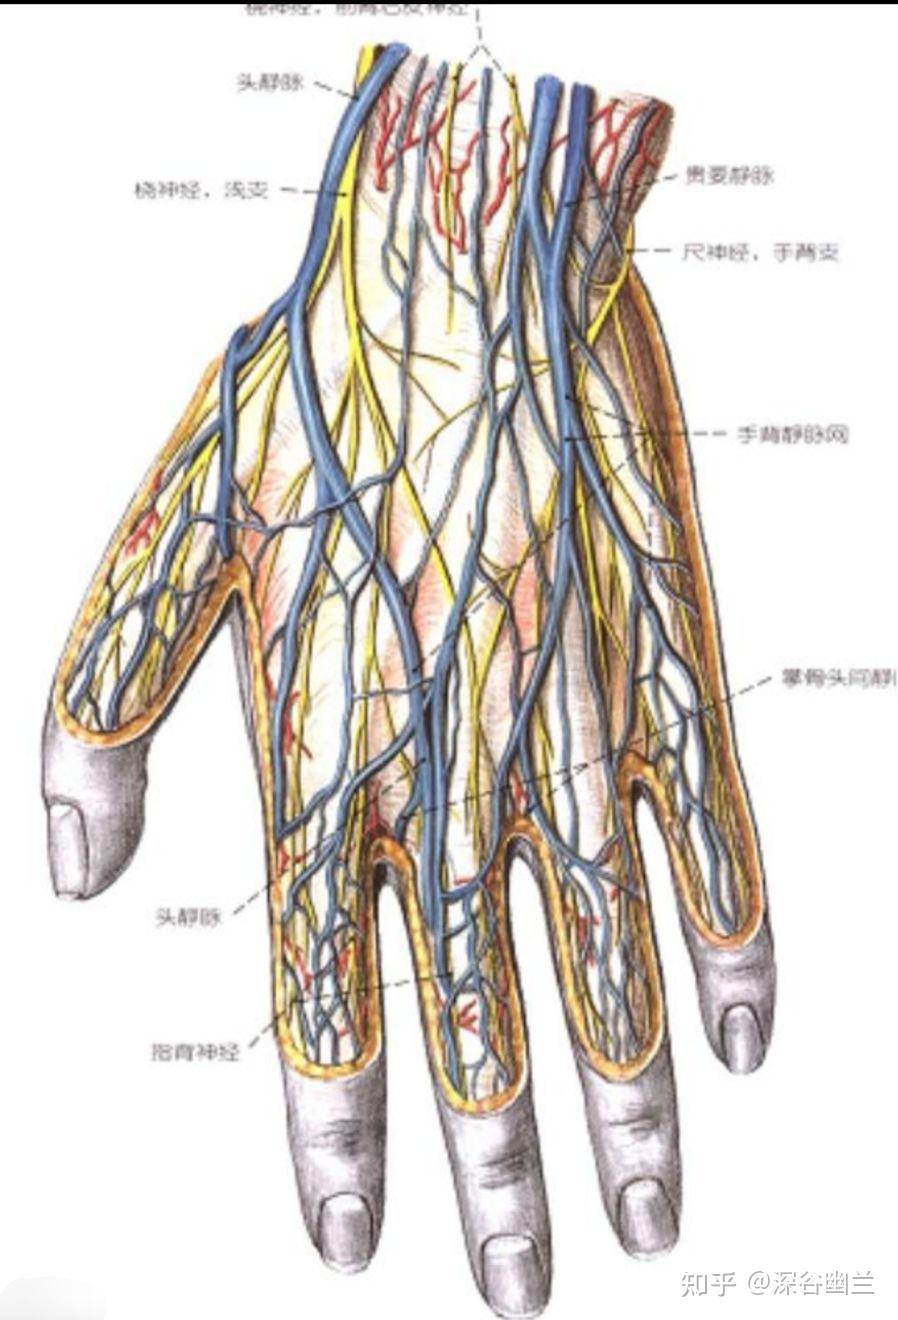 手背静脉解剖位置图片